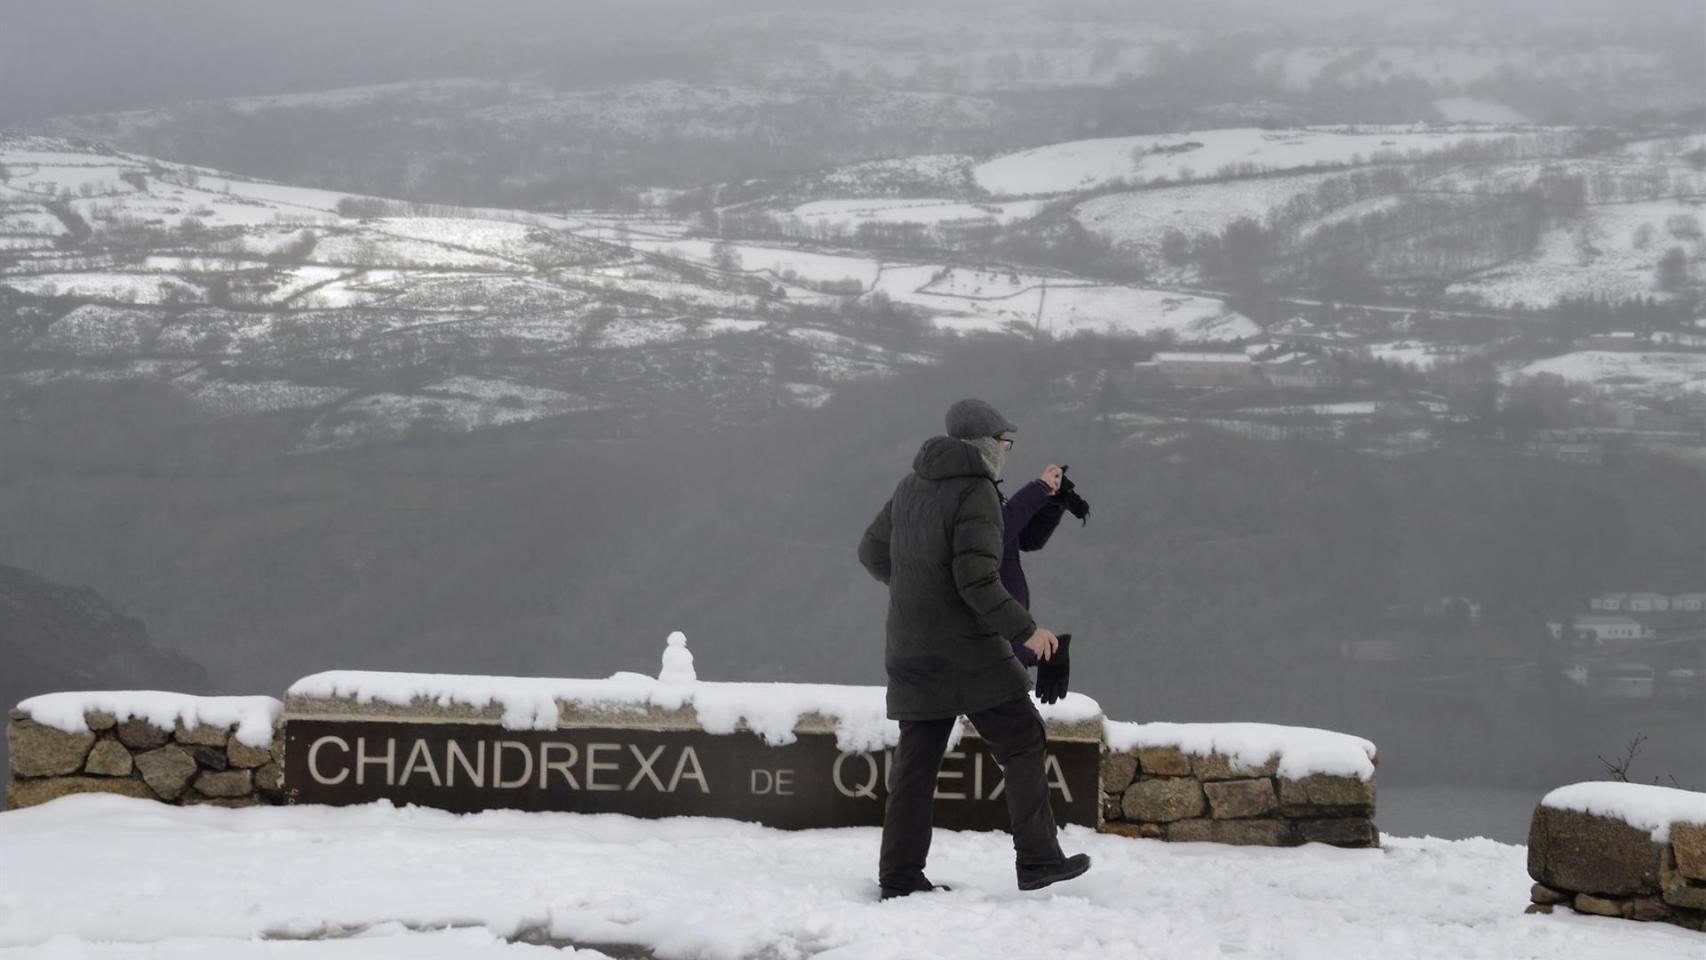 Una persona camina por la nieve en Chandrexa de Queixa, Ourense, Galicia (Imagen de archivo)